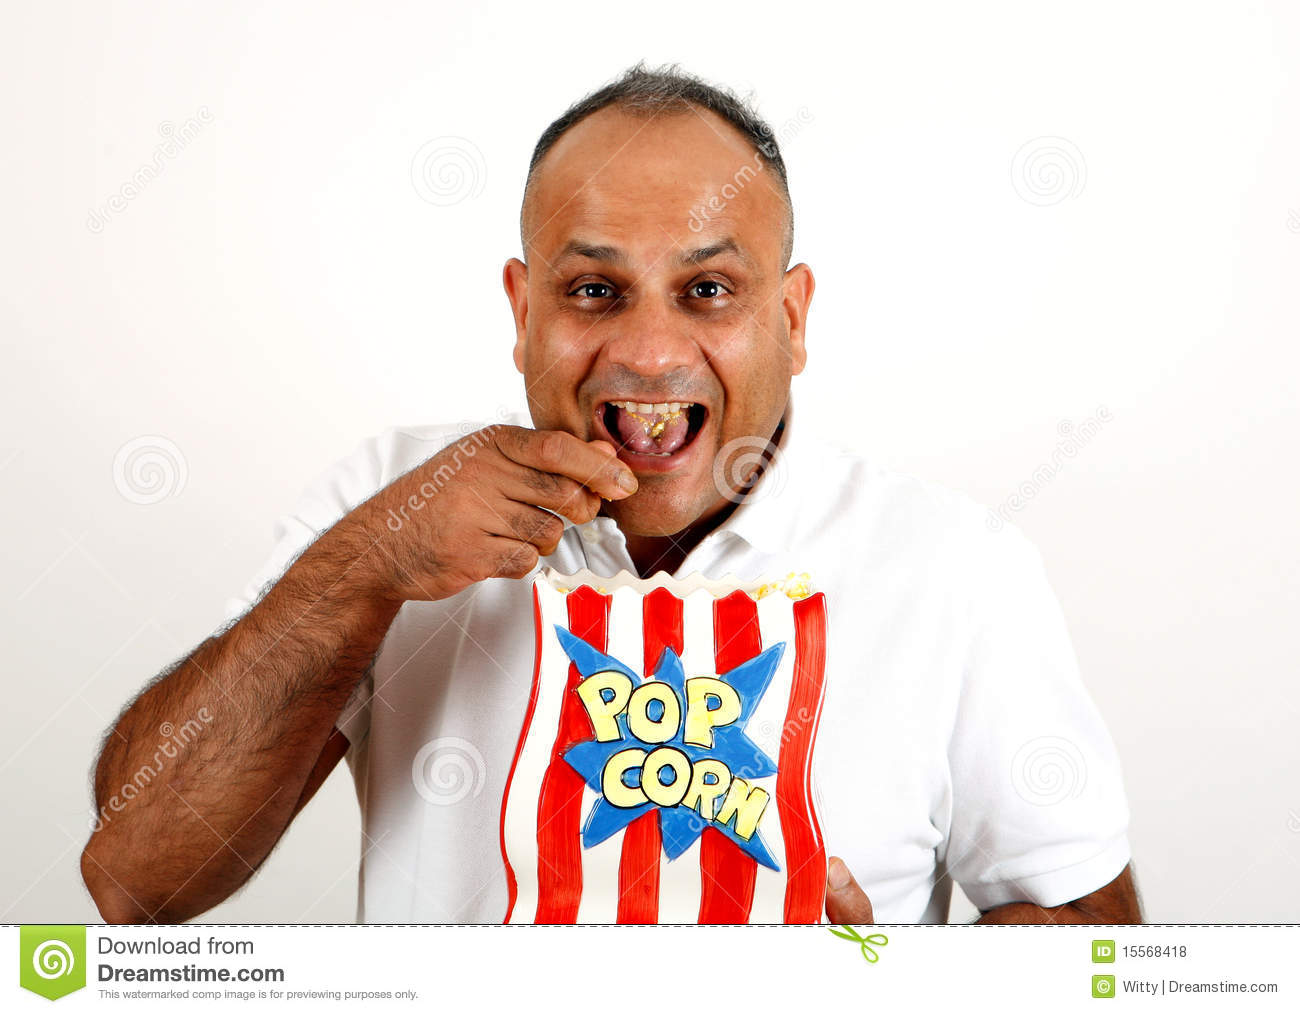 guy-eating-popcorn-15568418.jpg